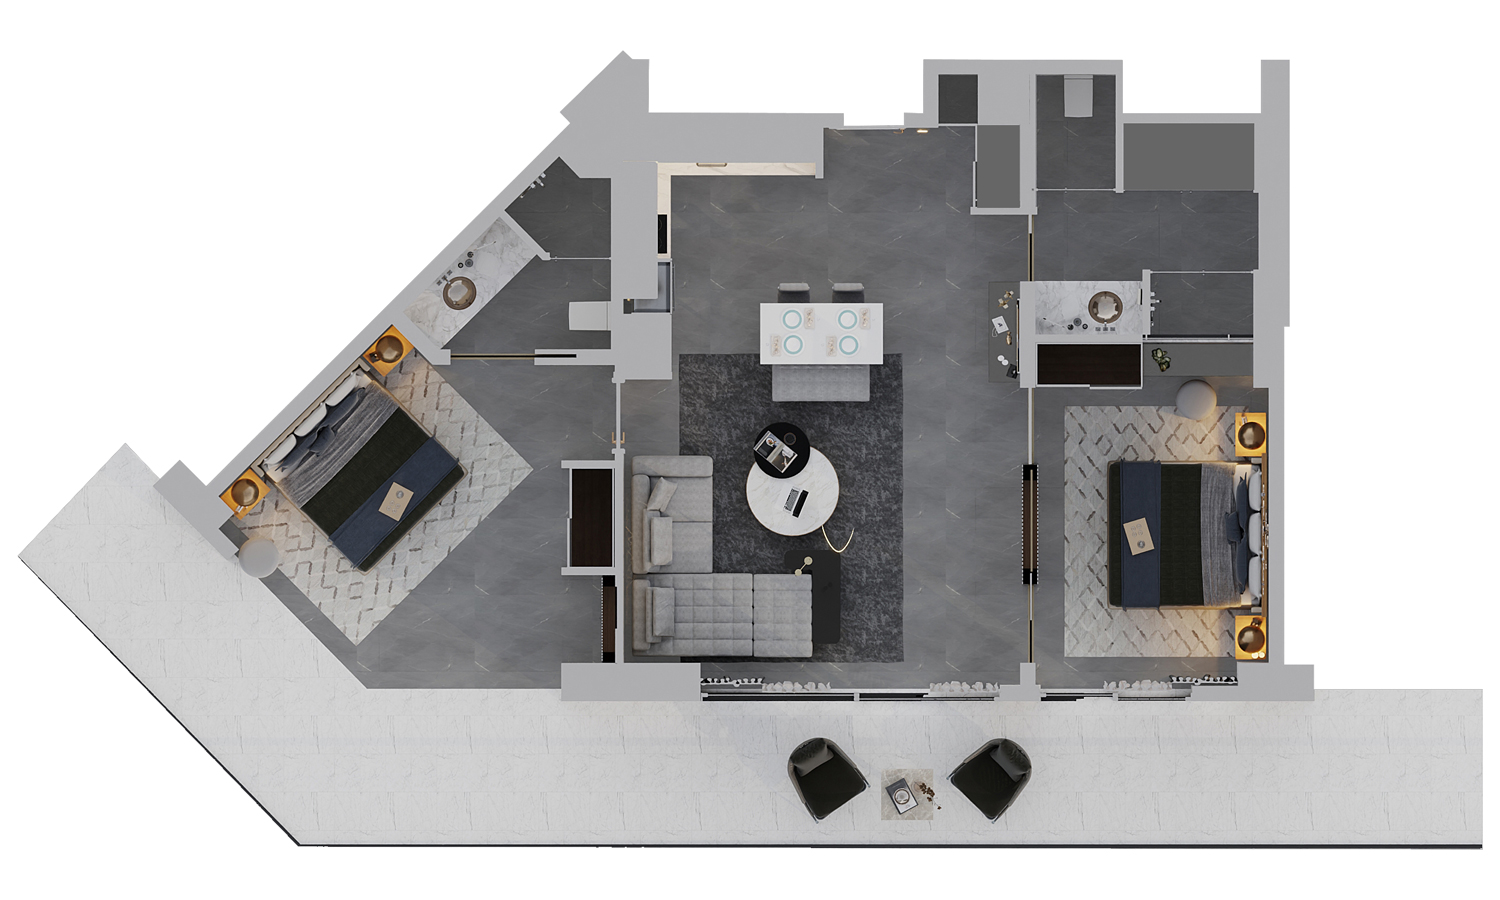 Floor Plan - 2 bedroom apartment / Block B